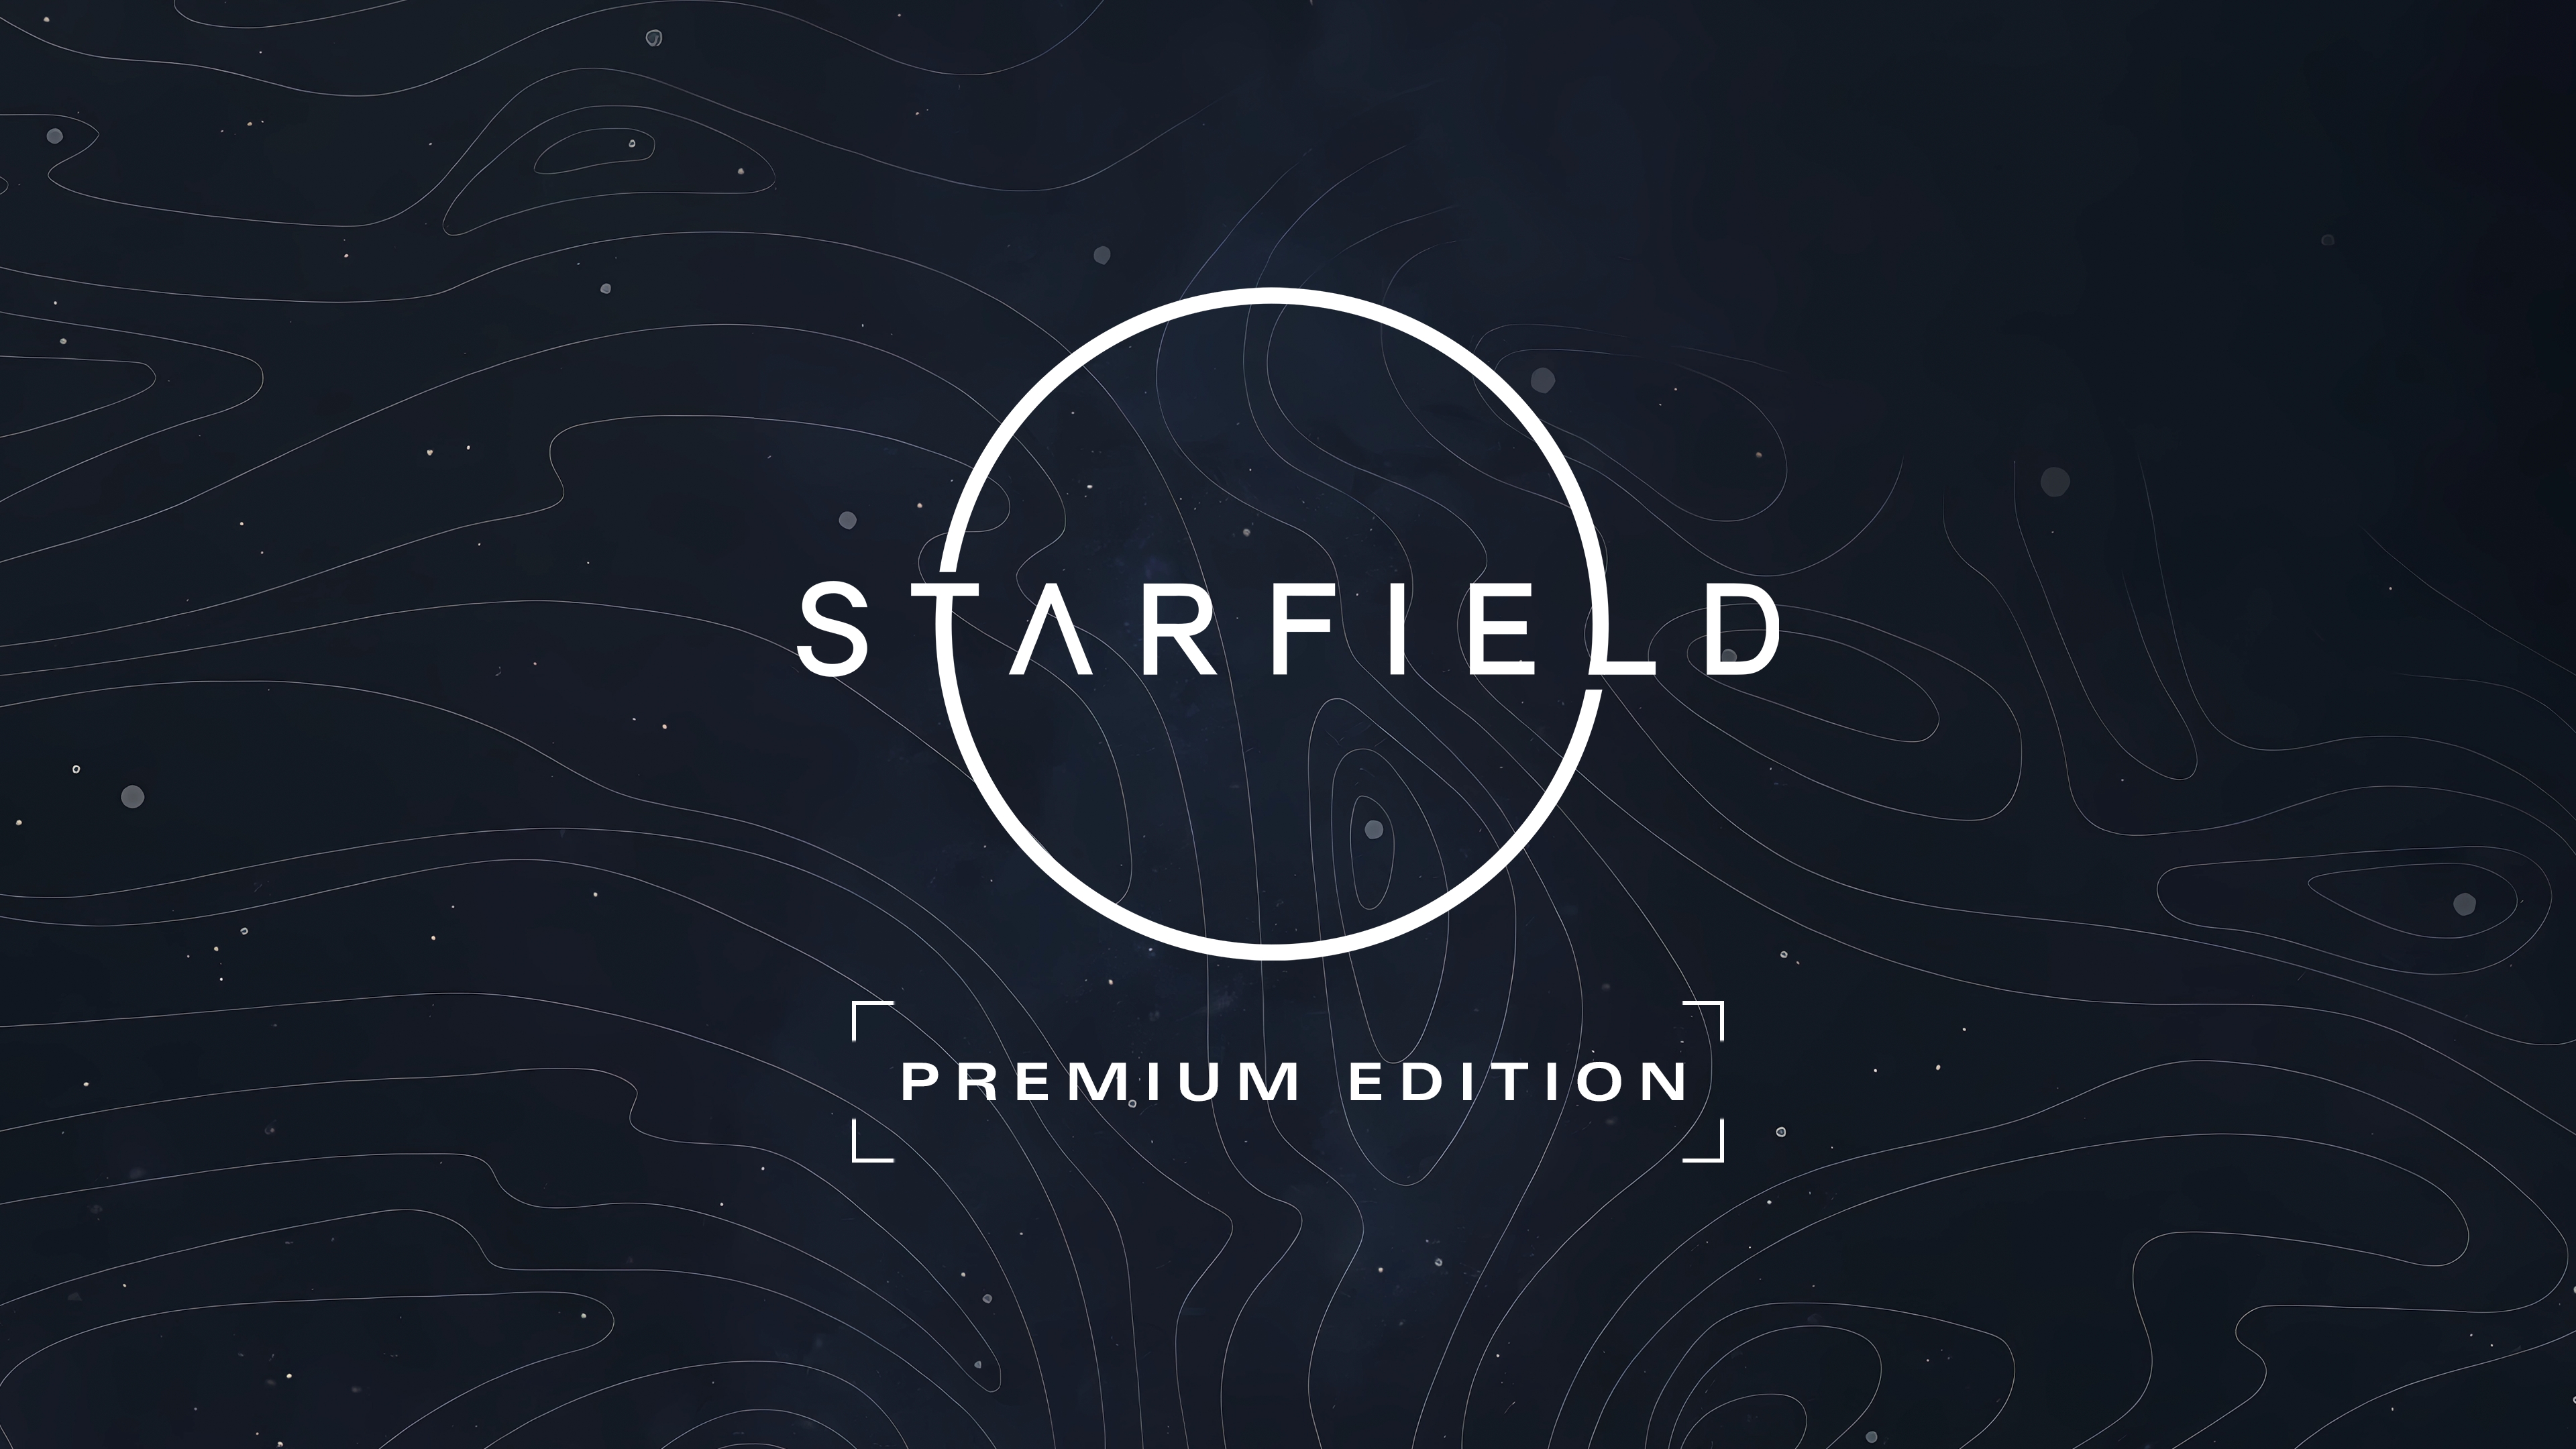 Starfield: Xbox, PC ou Cloud Gaming, afinal onde é melhor jogar?